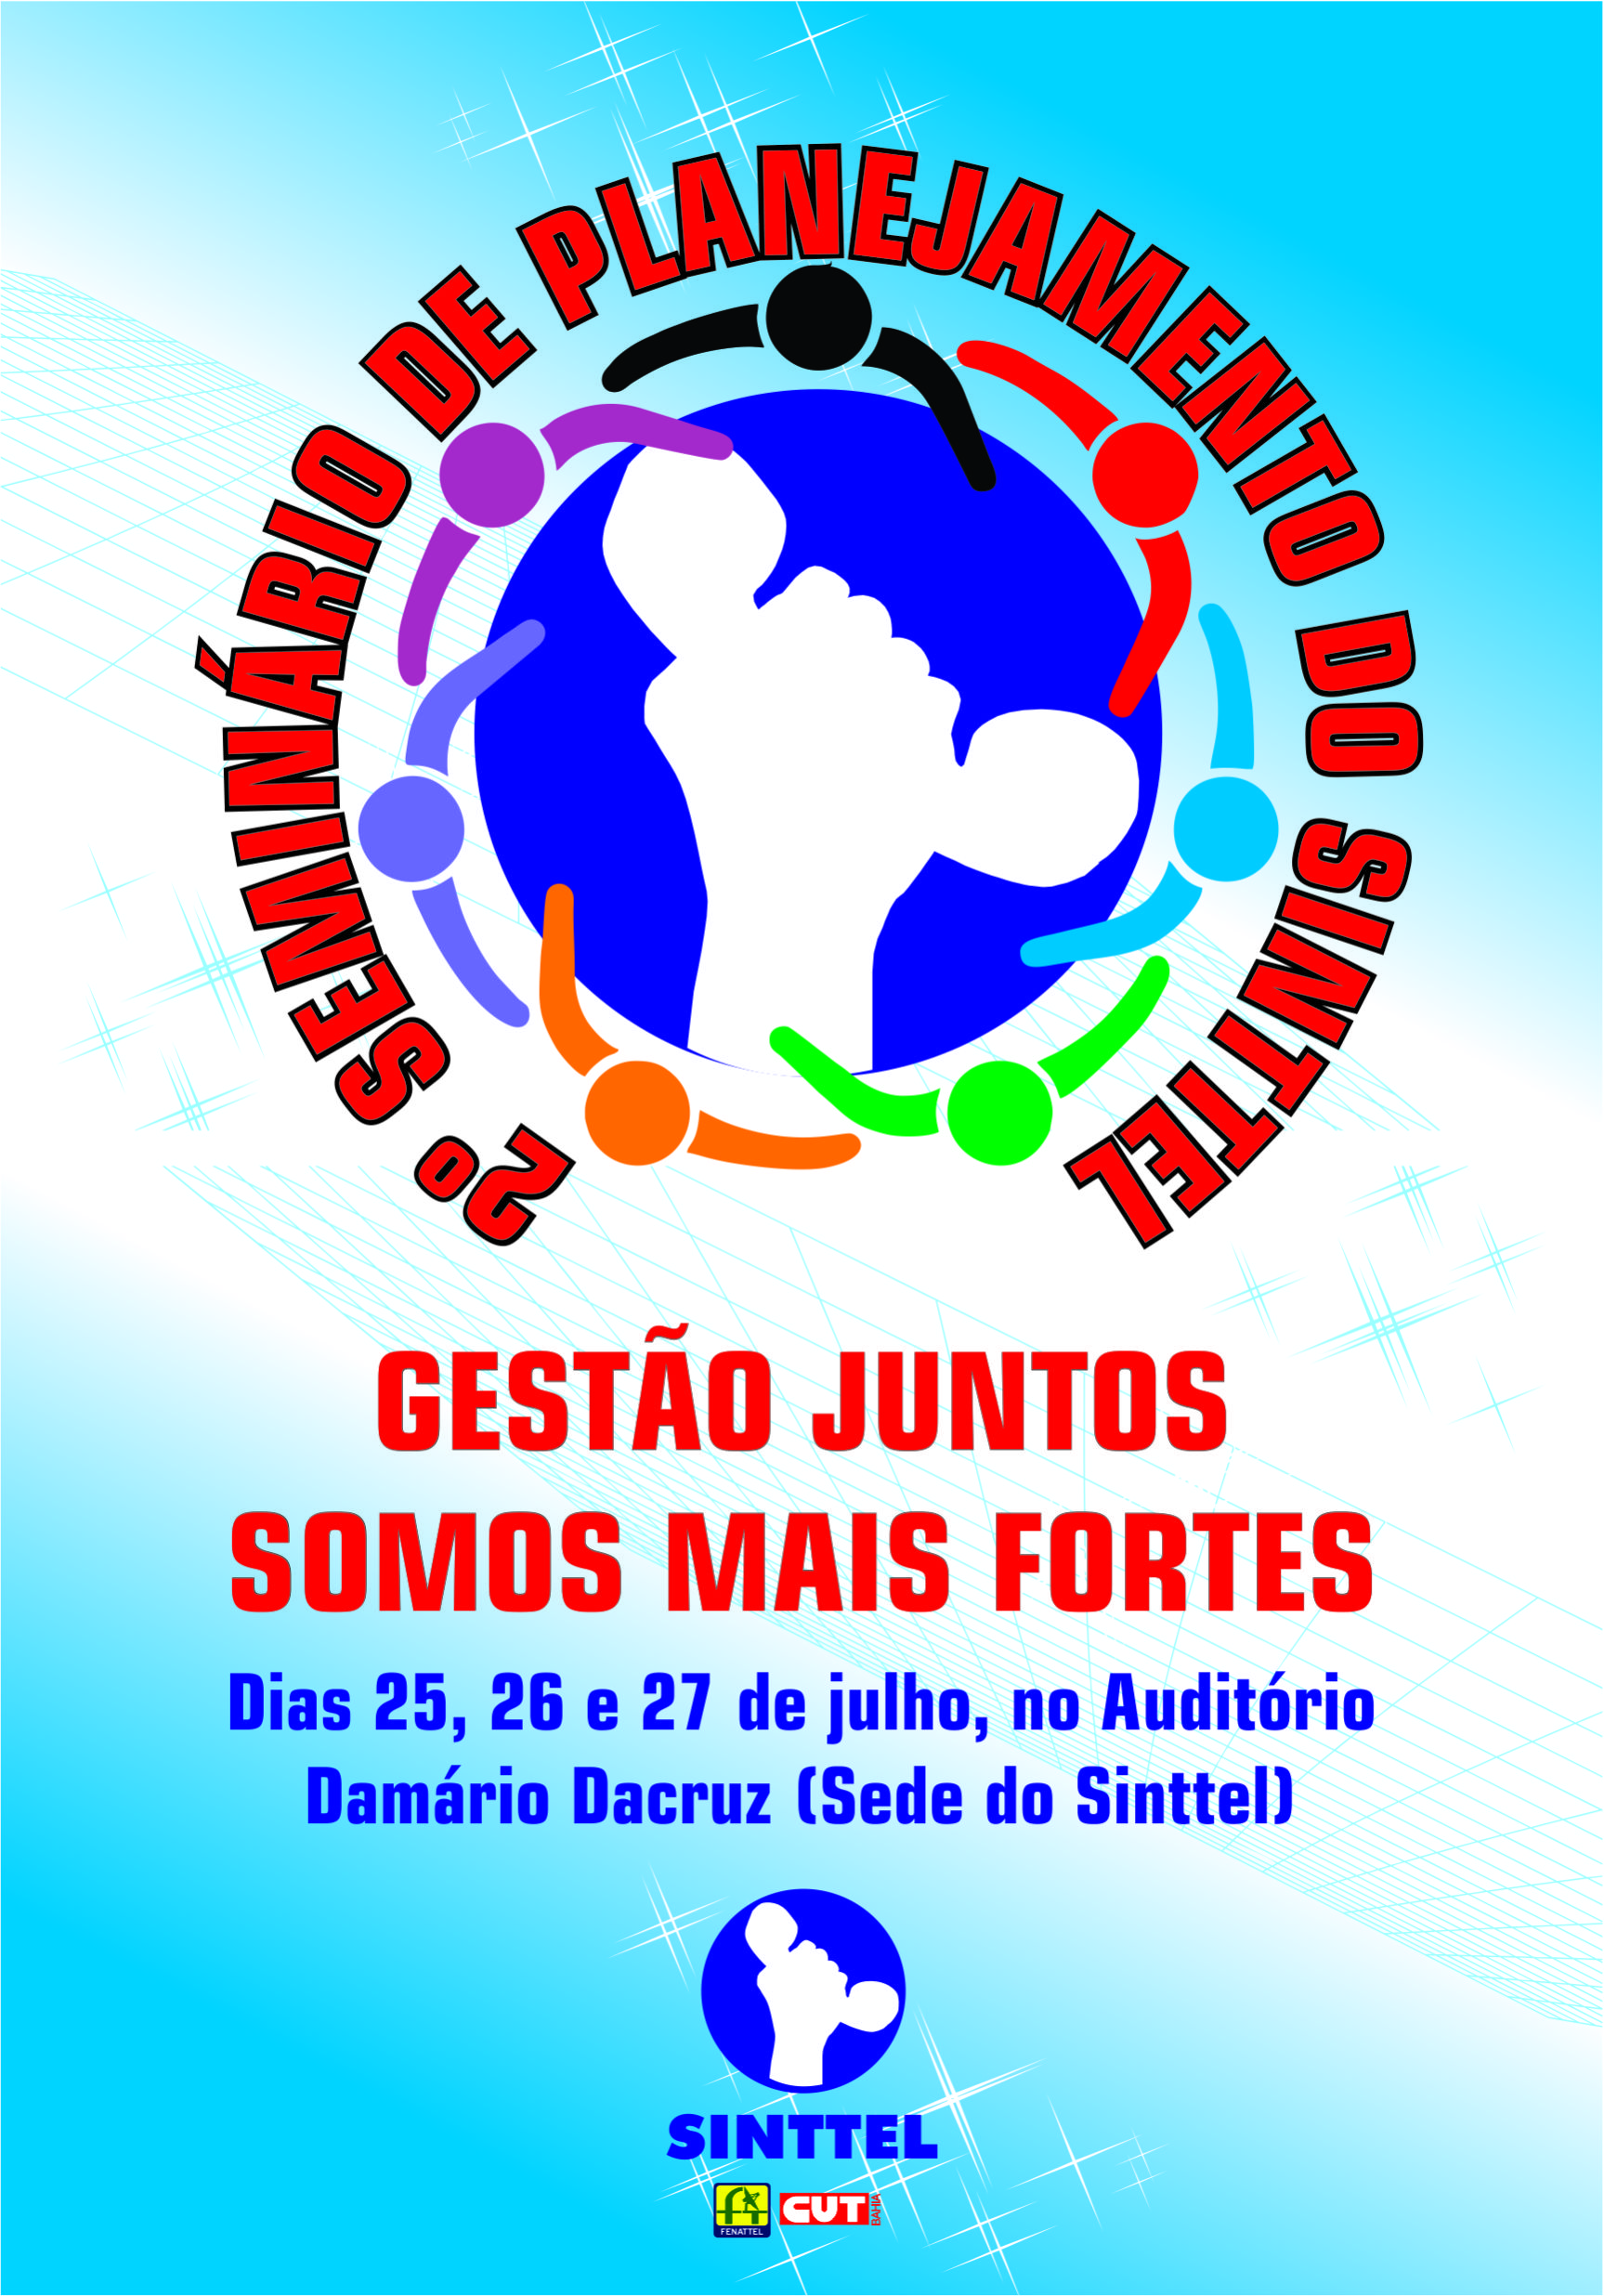 Reforma Trabalhista e Conjuntura política serão discutidas durante o IIº Seminário de planejamento do Sinttel Bahia